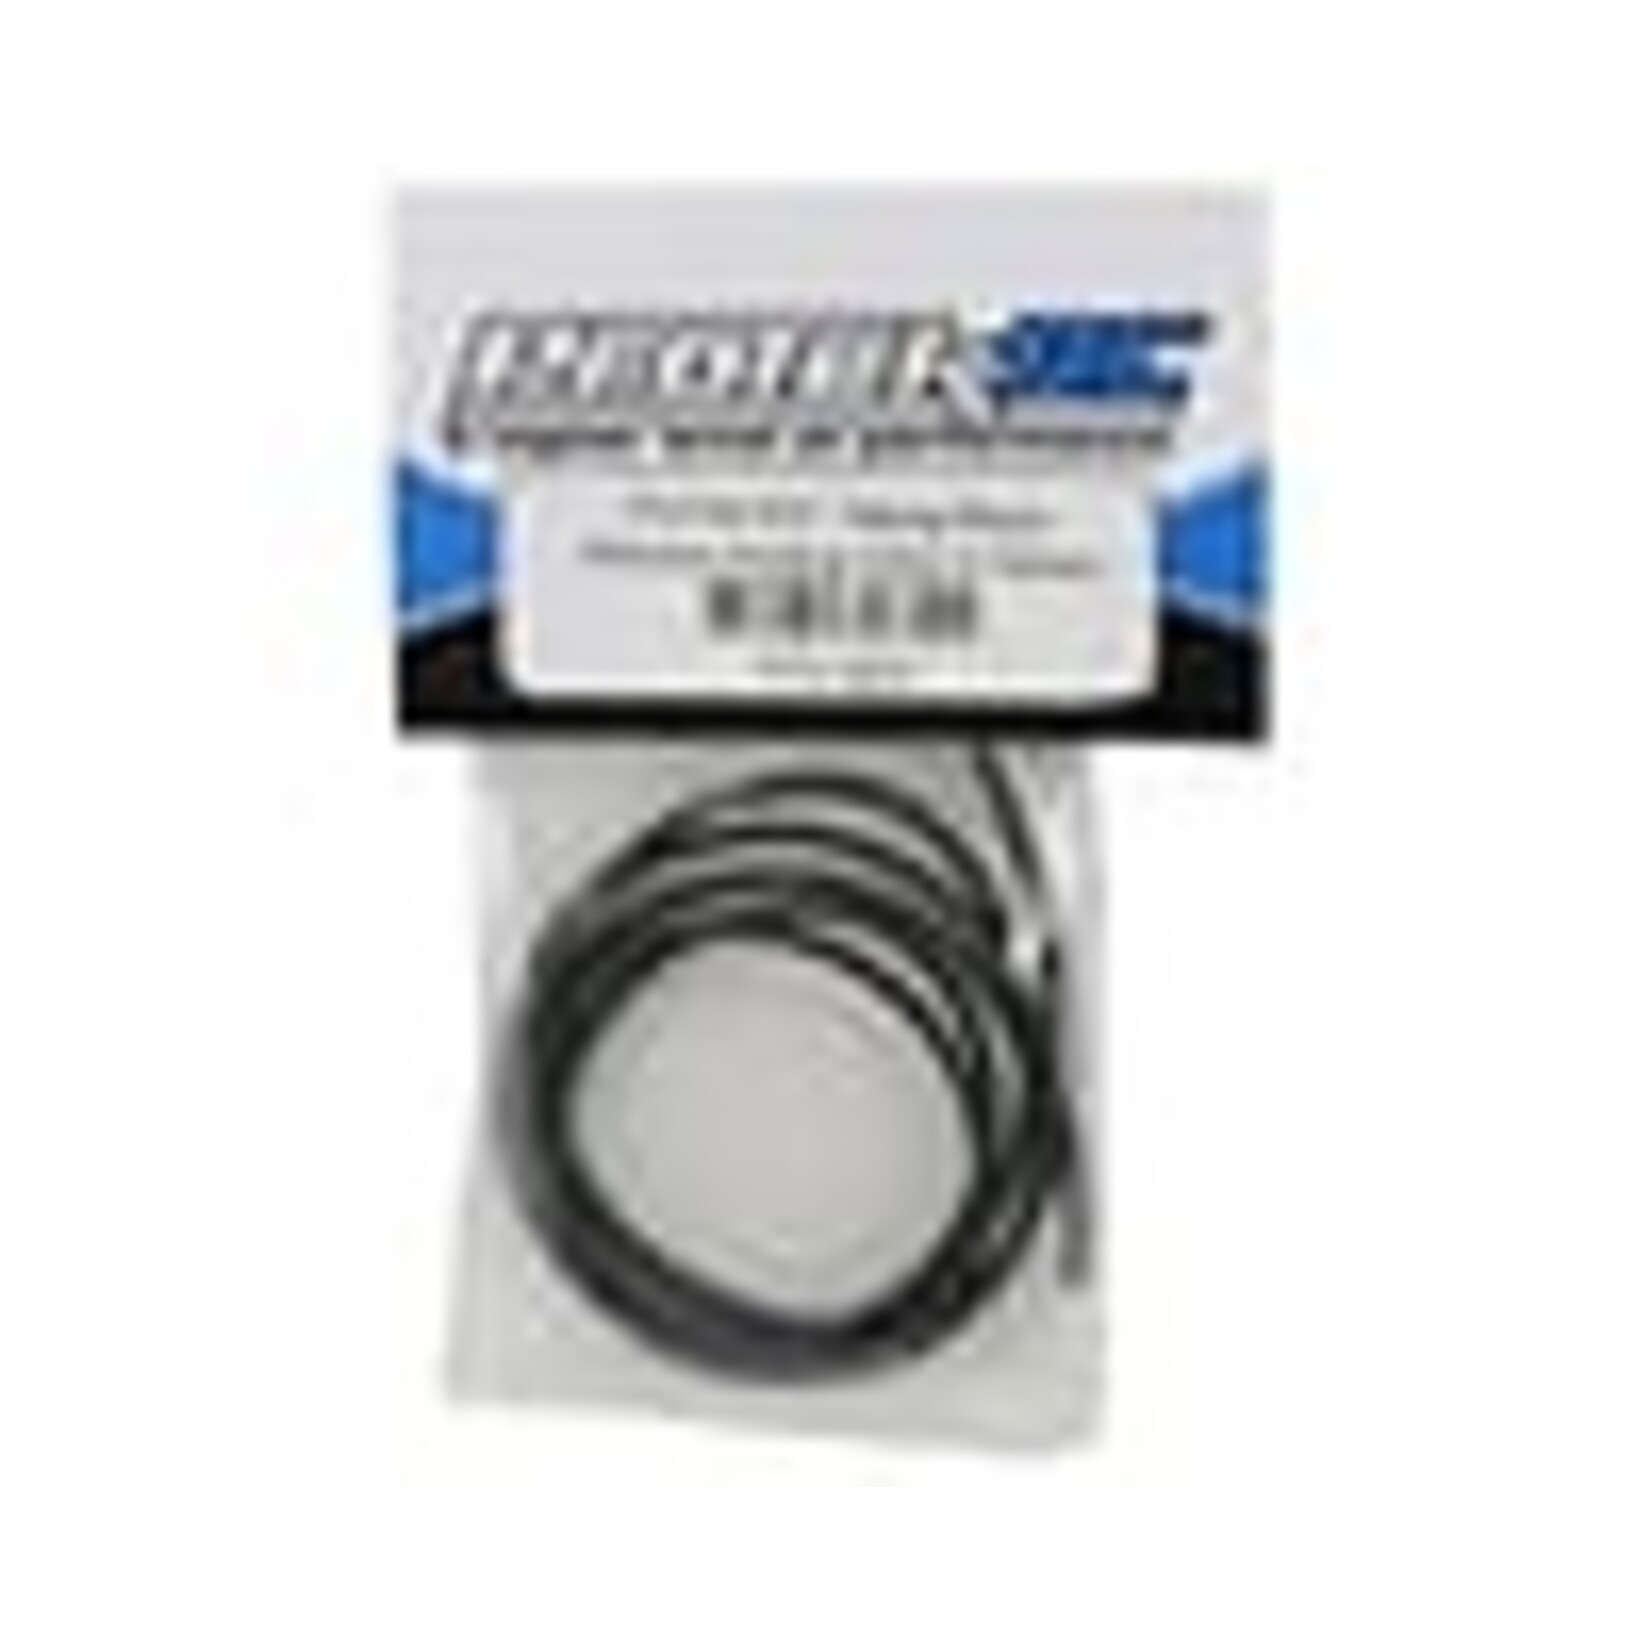 ProTek RC ProTek RC Silicone Hookup Wire (Black) (1 Meter) (14AWG) #PTK-5607